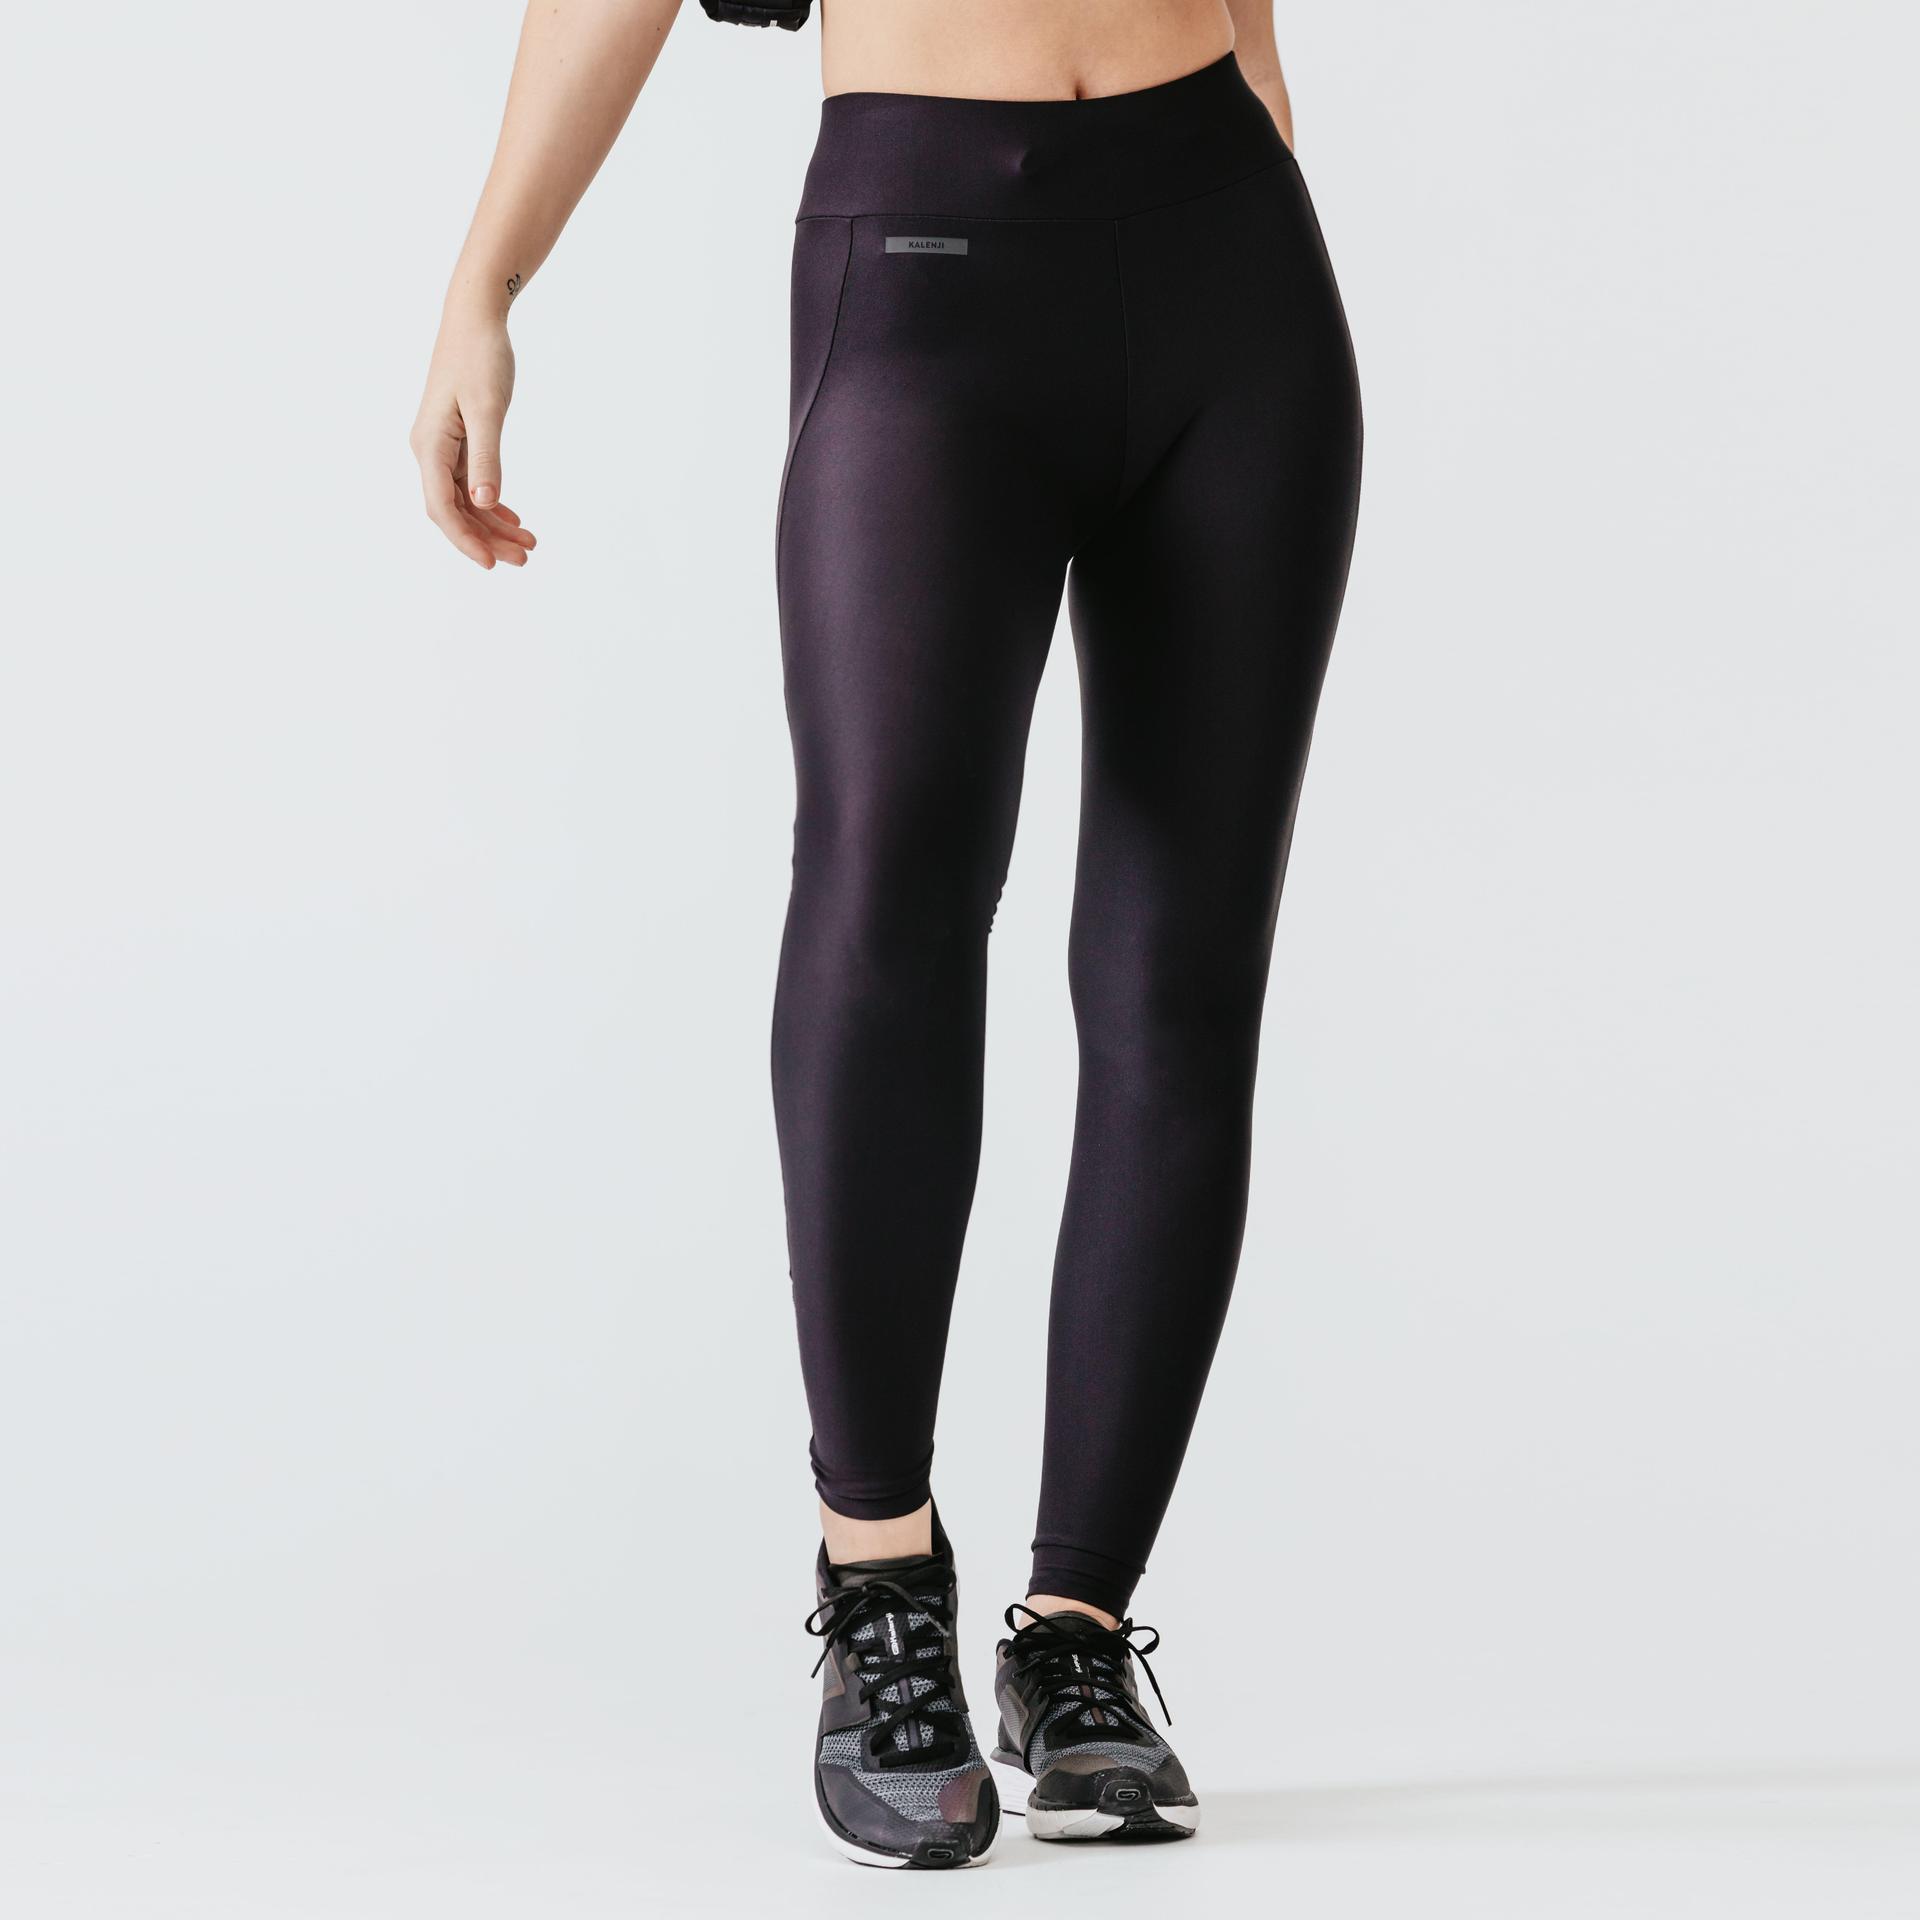 women's-long-running-leggings-dry---black